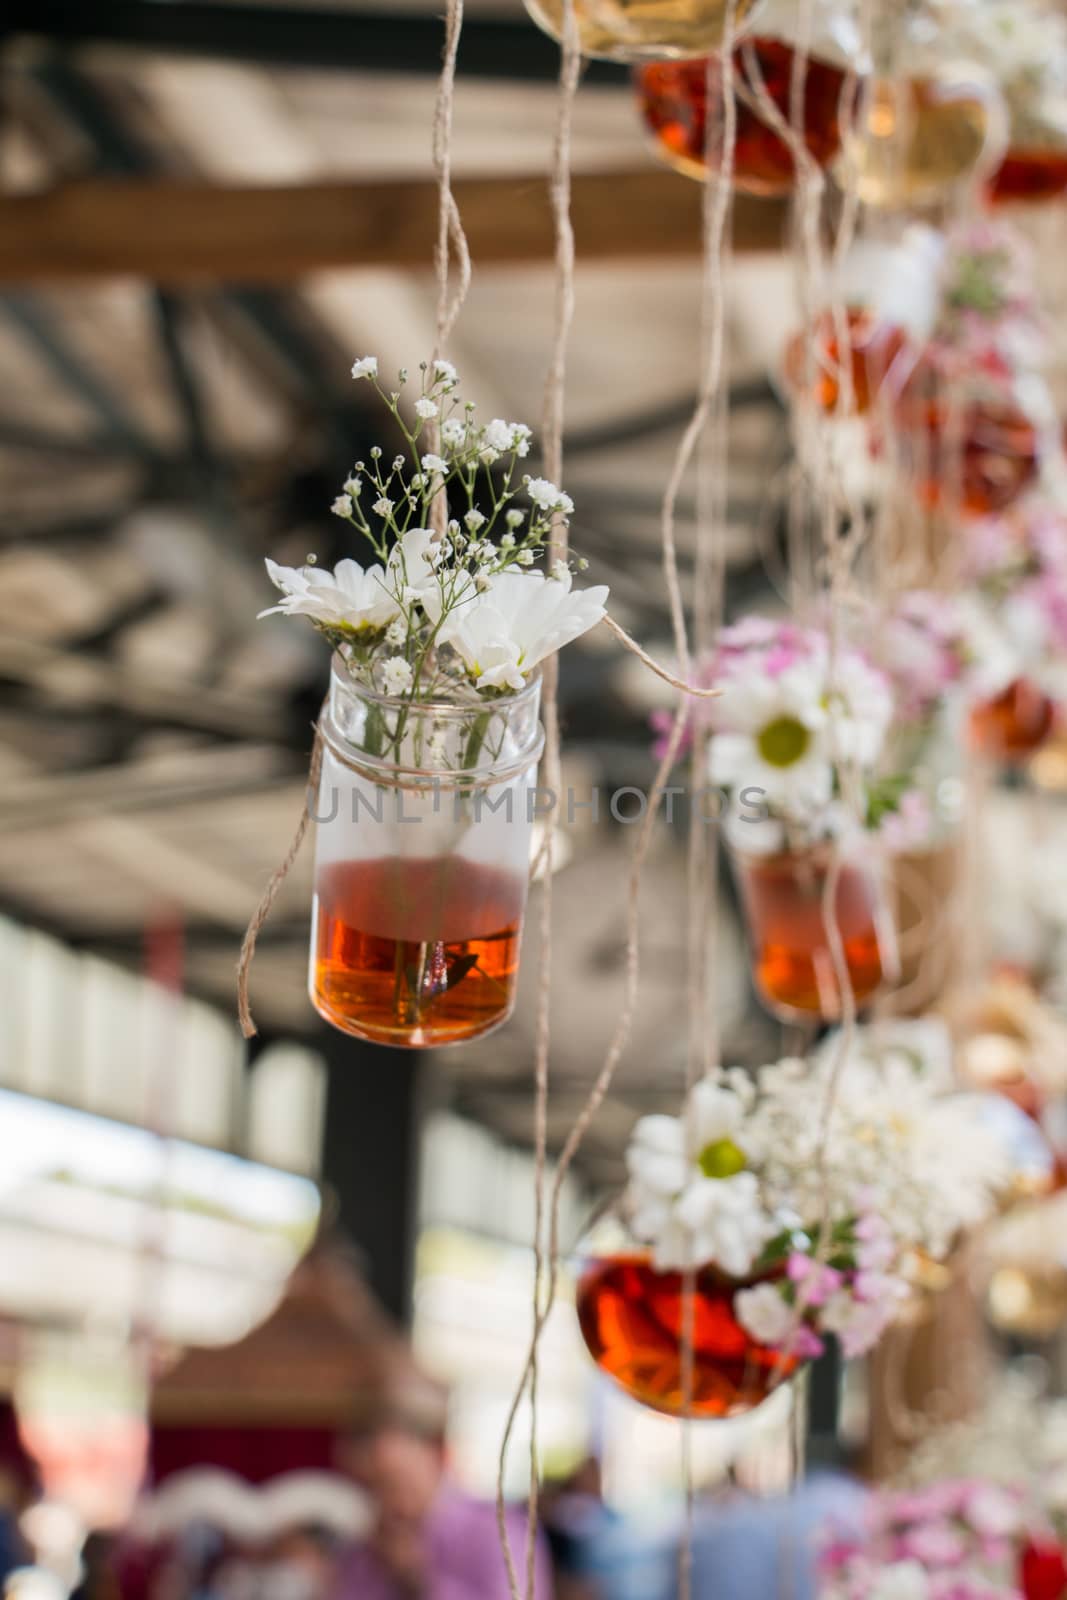 Herbal tea bottles hanging on strings by berkay